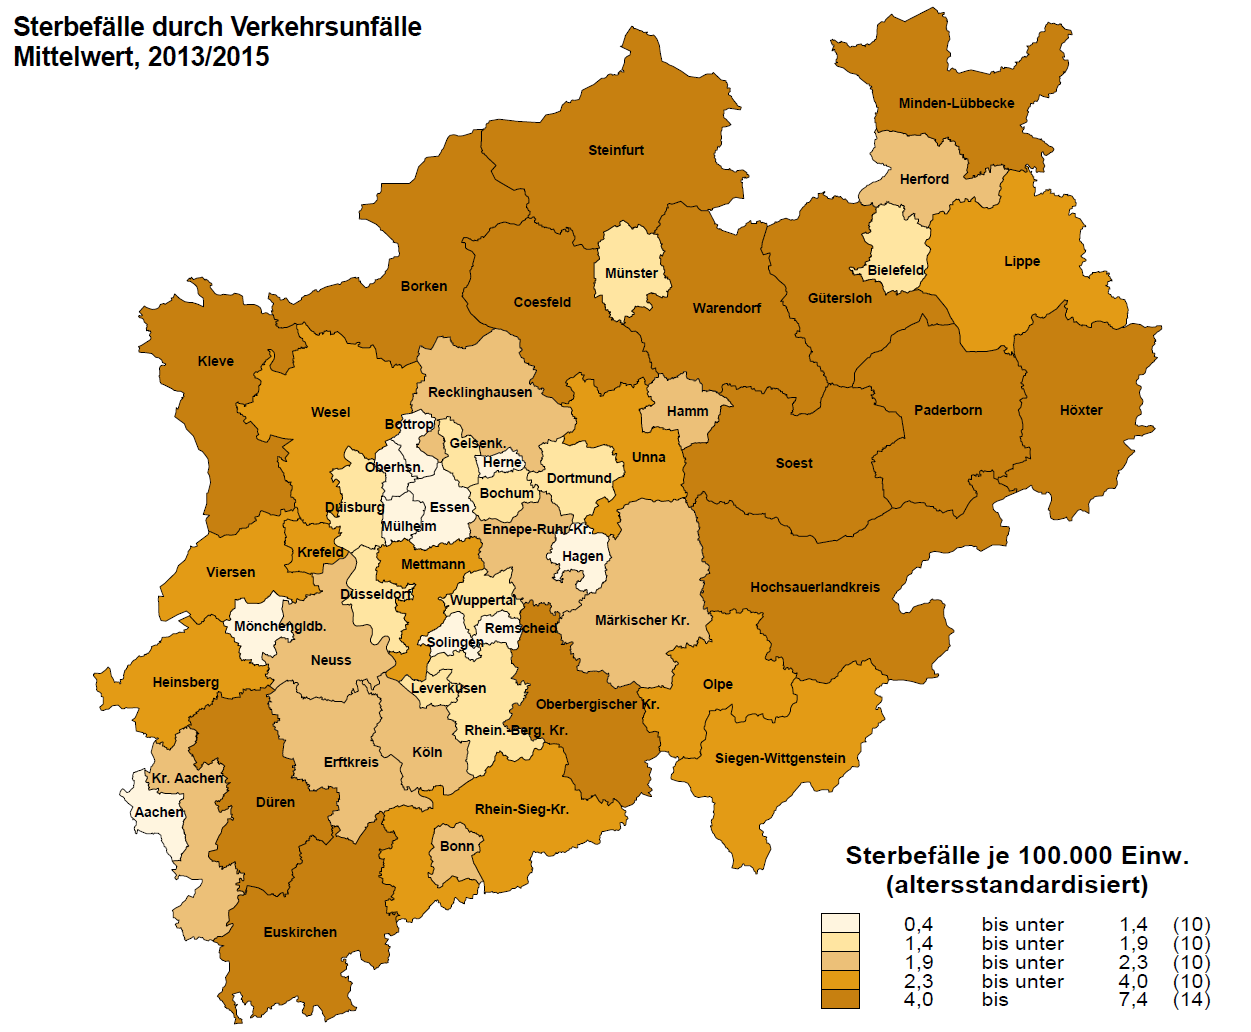 NRW-Kreiskarte zur Sterblichkeit durch Verkehrsunfälle für die Jahre 2013 bis 2015 (3-Jahres-Mittelwert)